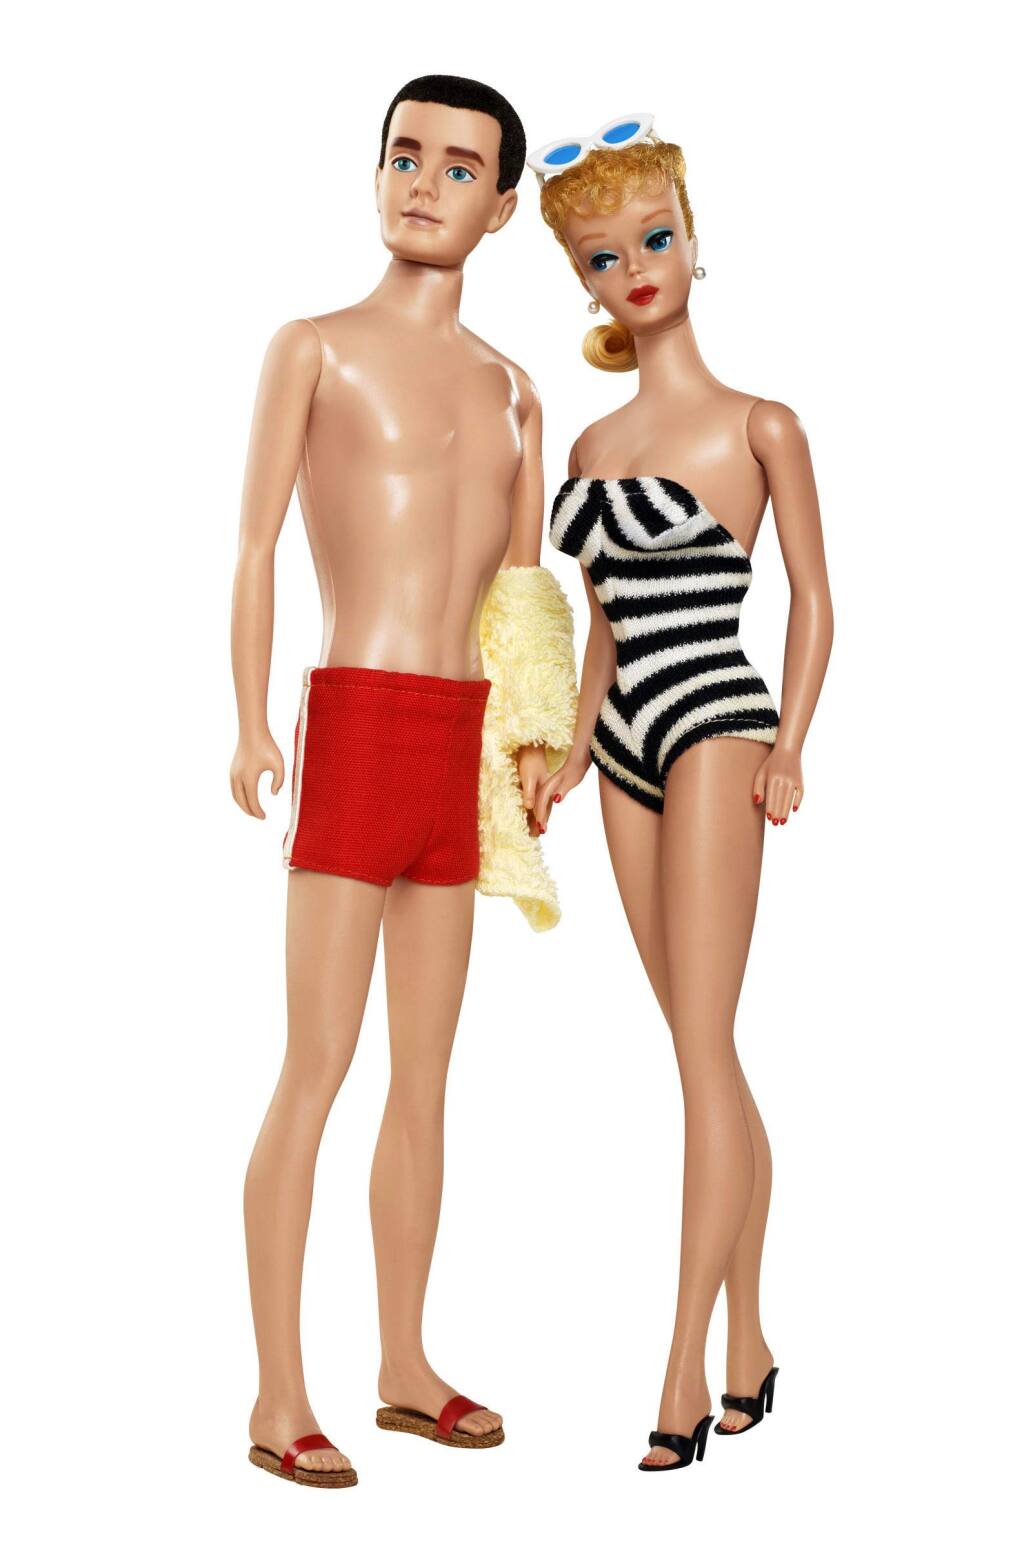 Aanstellen gemeenschap fusie Mattel gives Barbie's boyfriend Ken a new look